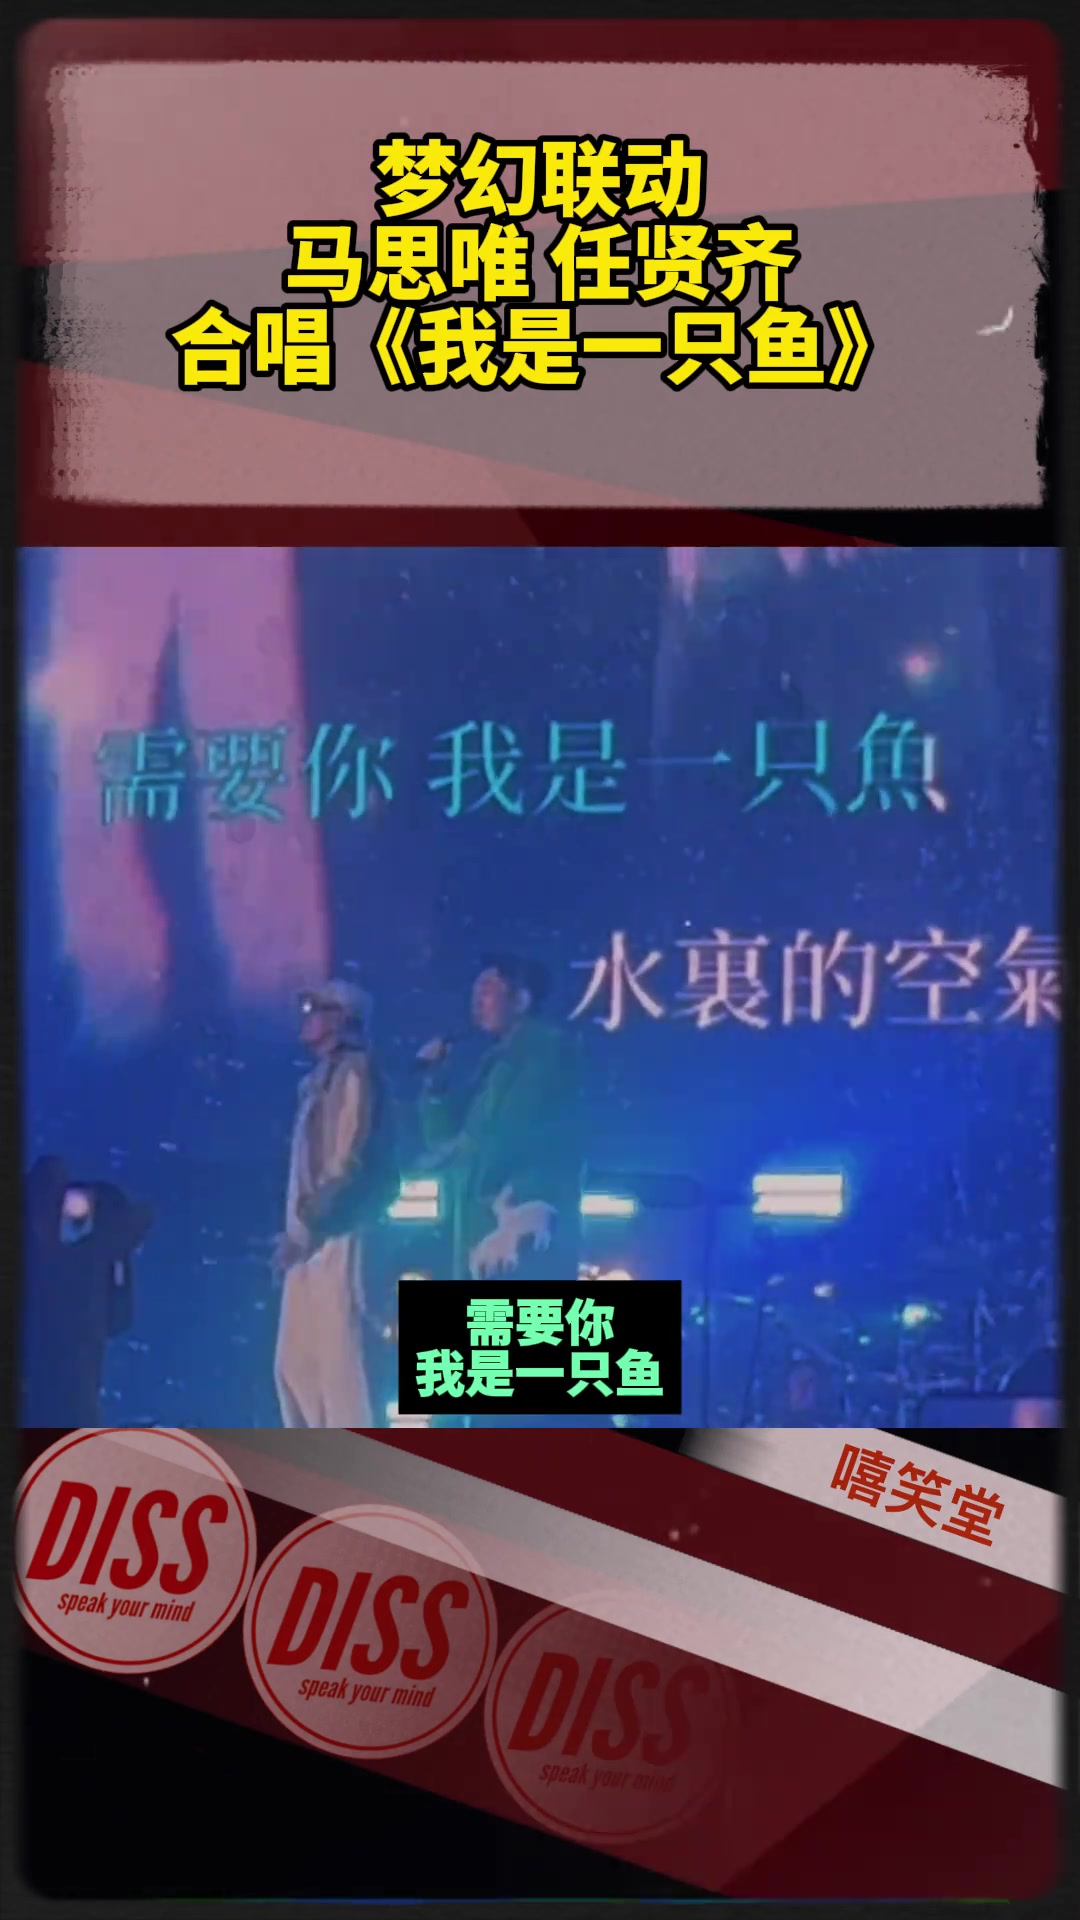 刘宇宁、任贤齐合唱歌曲《爱江山更爱美人》，两人合作感觉太好了！